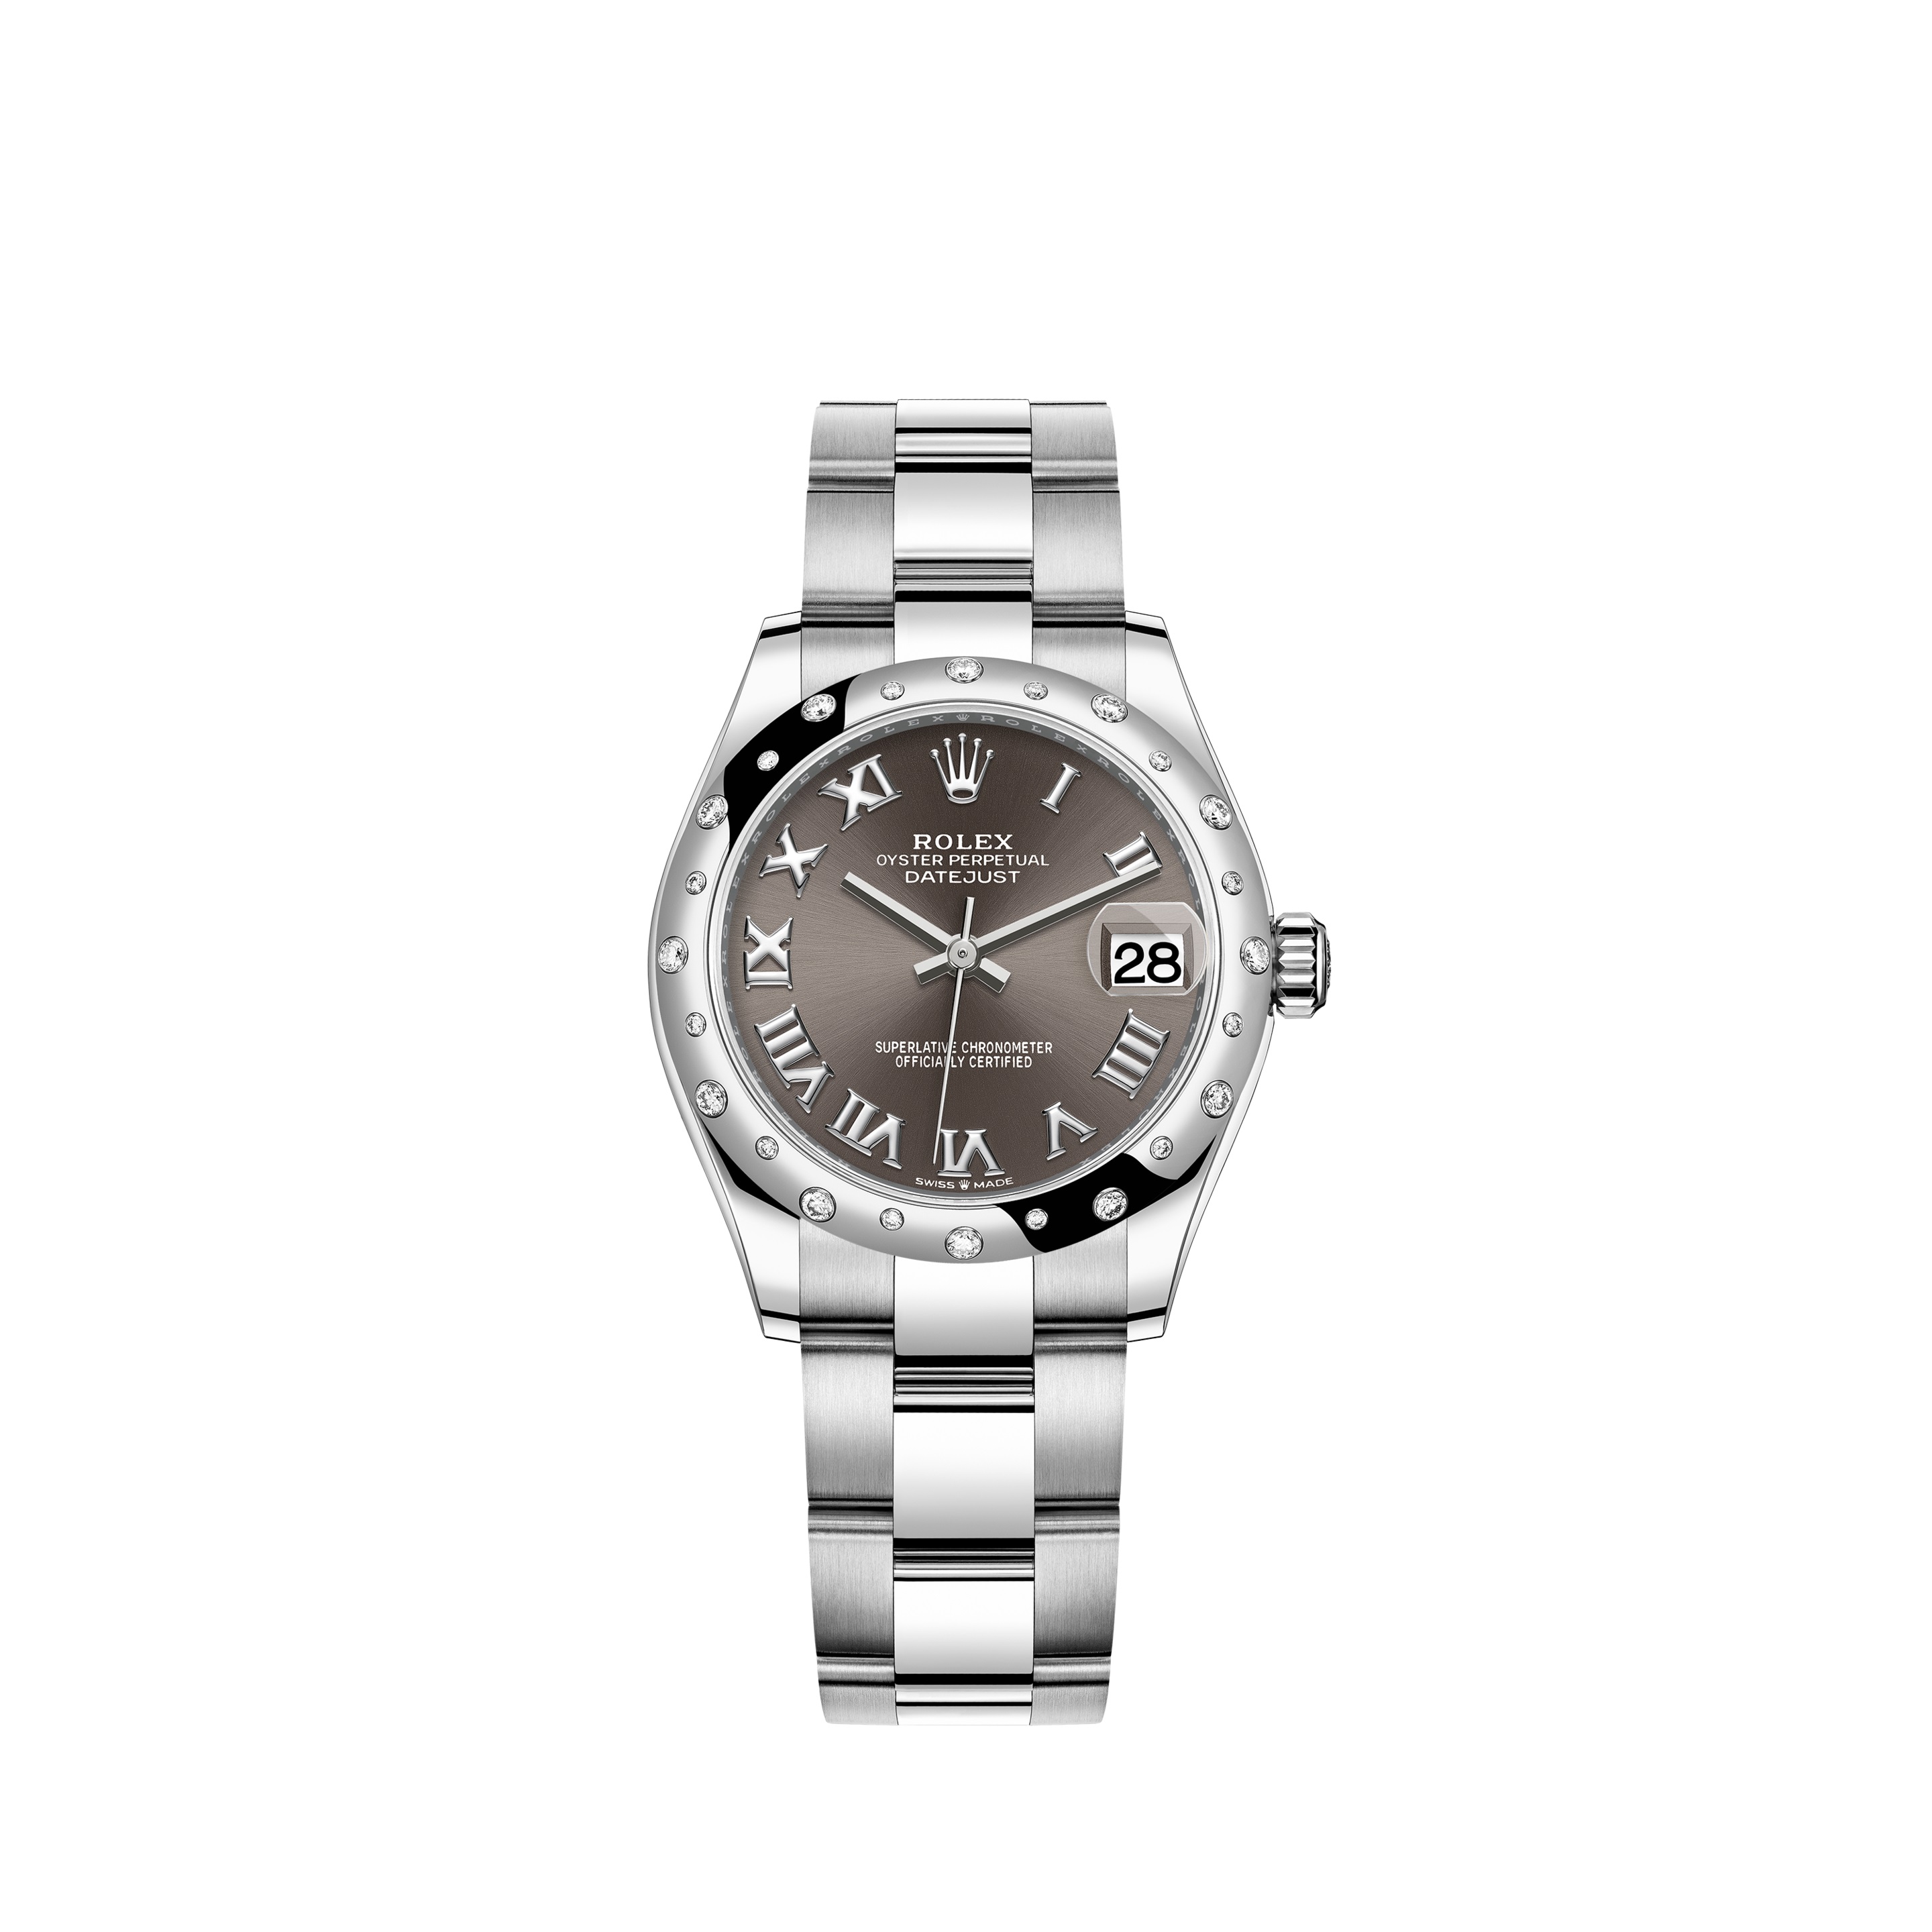 Datejust 31 278344RBR White Gold & Stainless Steel Watch (Dark Grey)